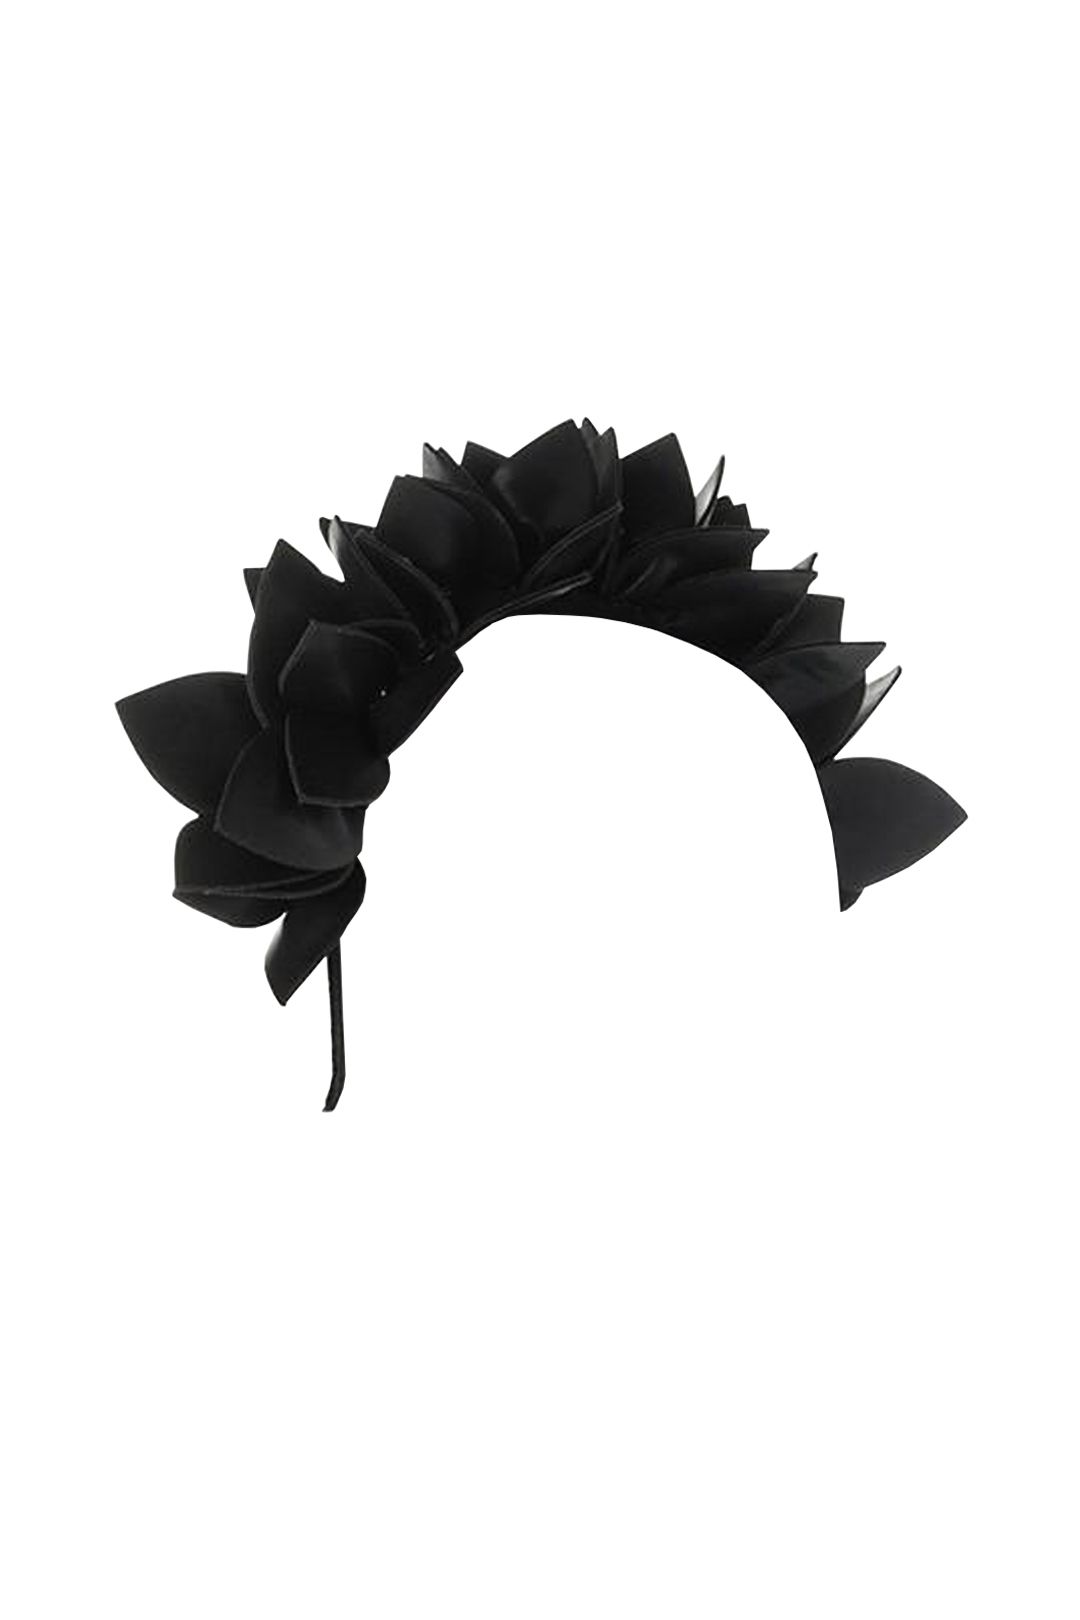 Olga Berg - Jess Floral Headband - Black - Side